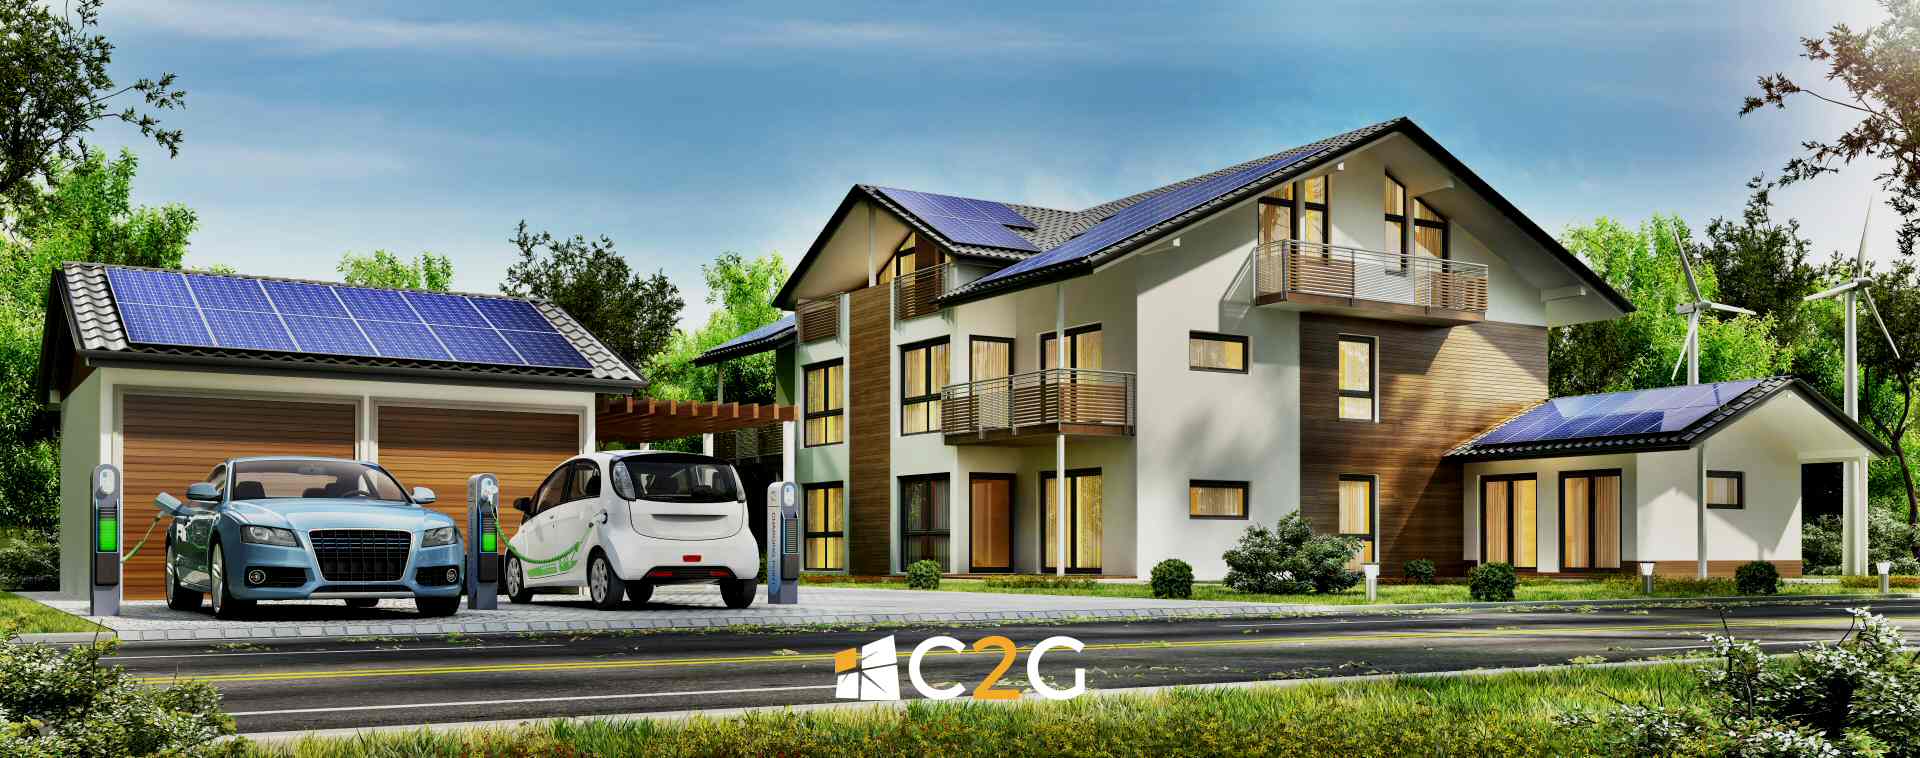 Risparmiare con fotovoltaico e ricarica auto elettriche - C2G Solar